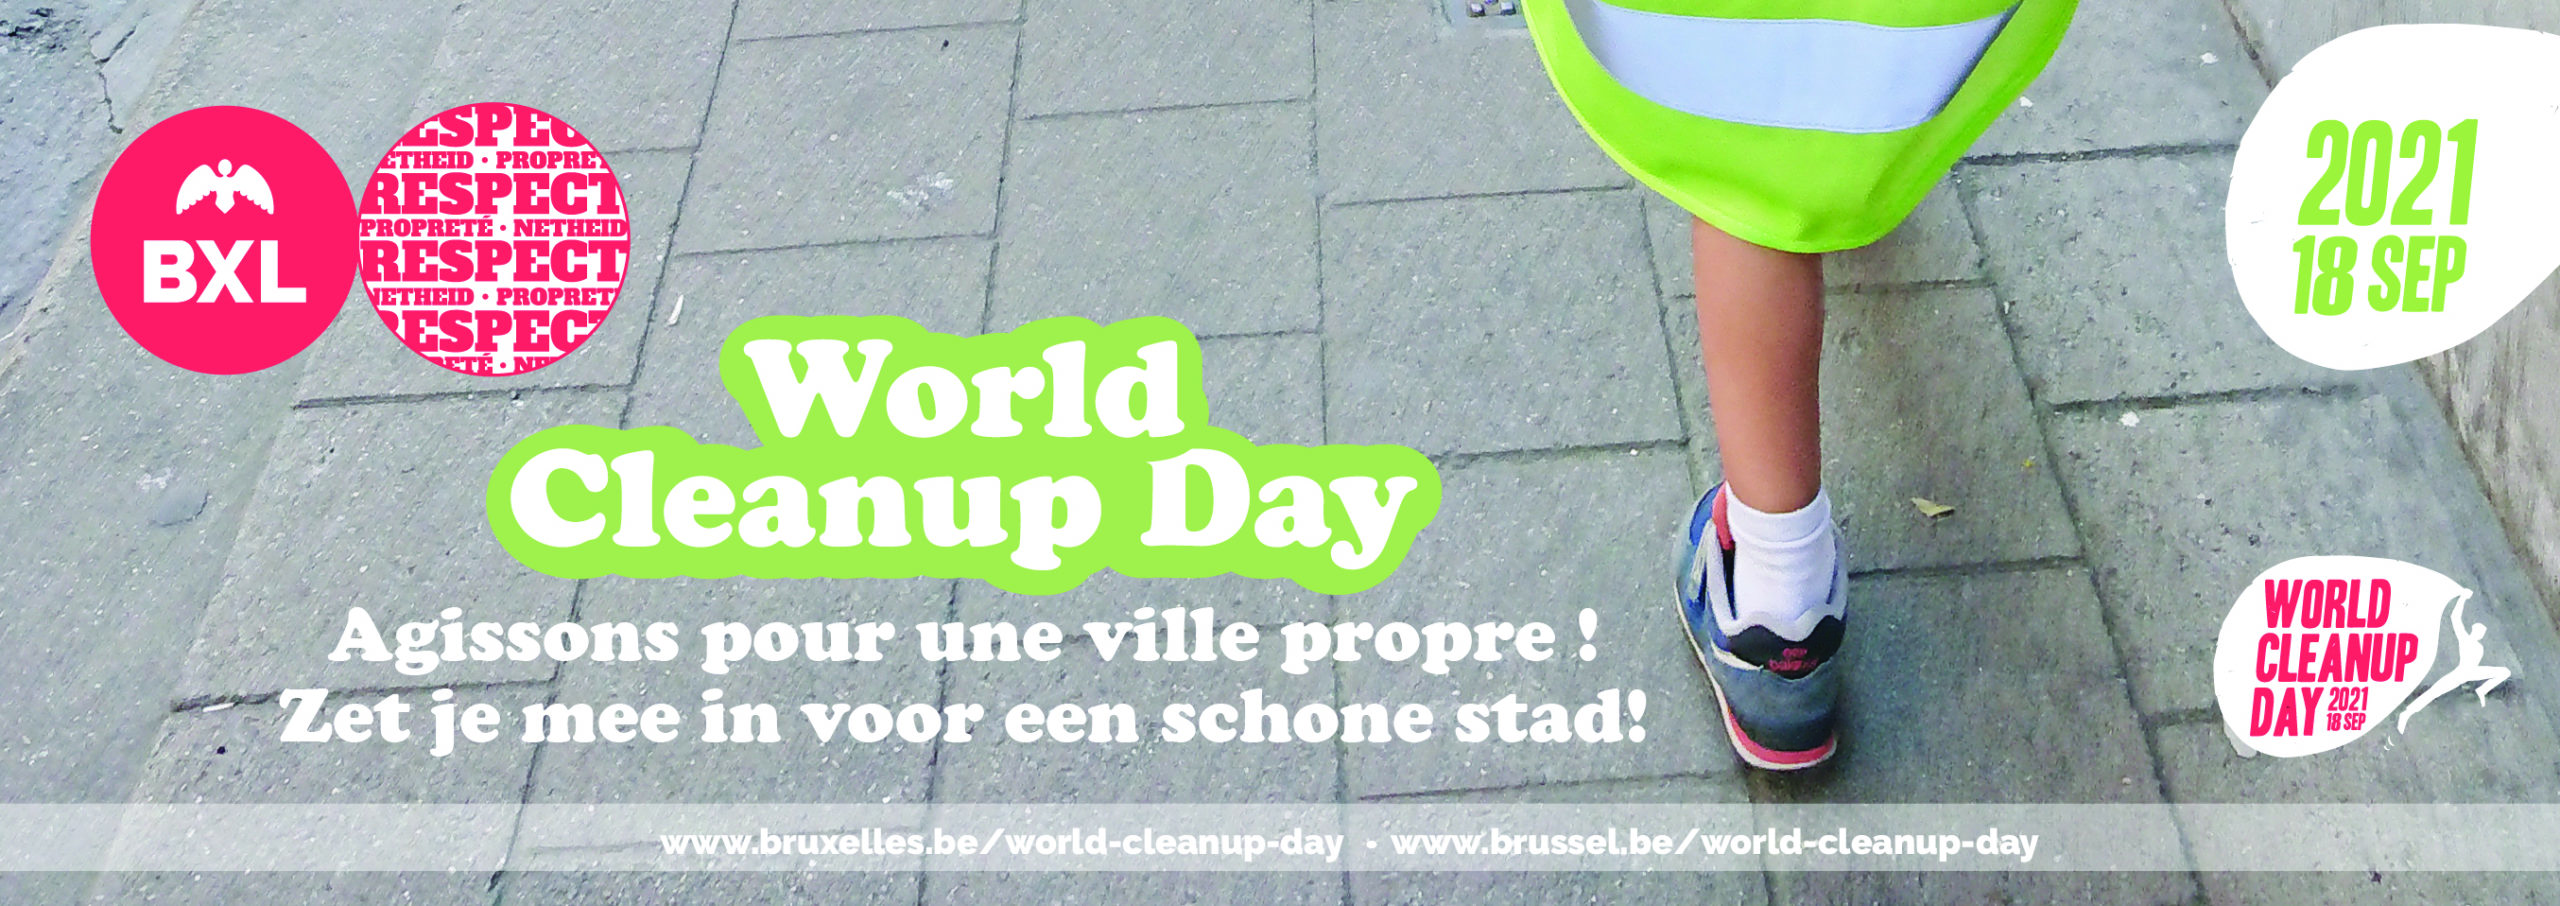 Samedi 18/09 : World Cleanup Day, à NOH aussi !